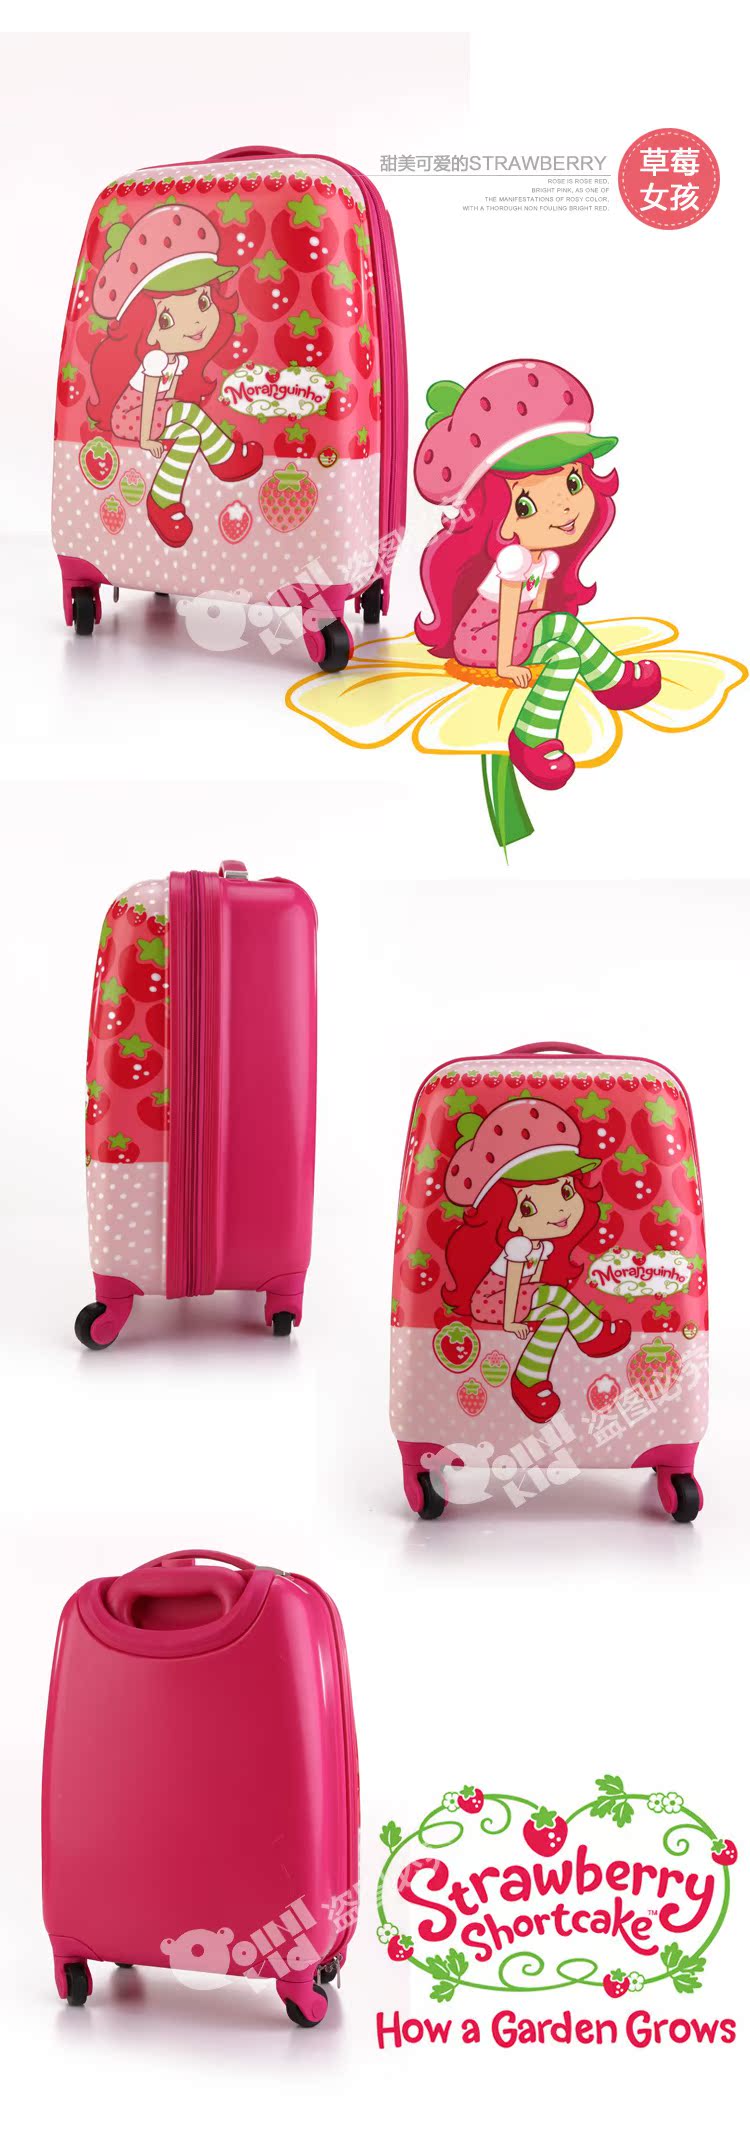 萬寶龍林丹系列 可愛兒童拉桿箱萬向輪寶寶旅行箱包卡通20寸男女孩行李箱子 萬寶龍a貨